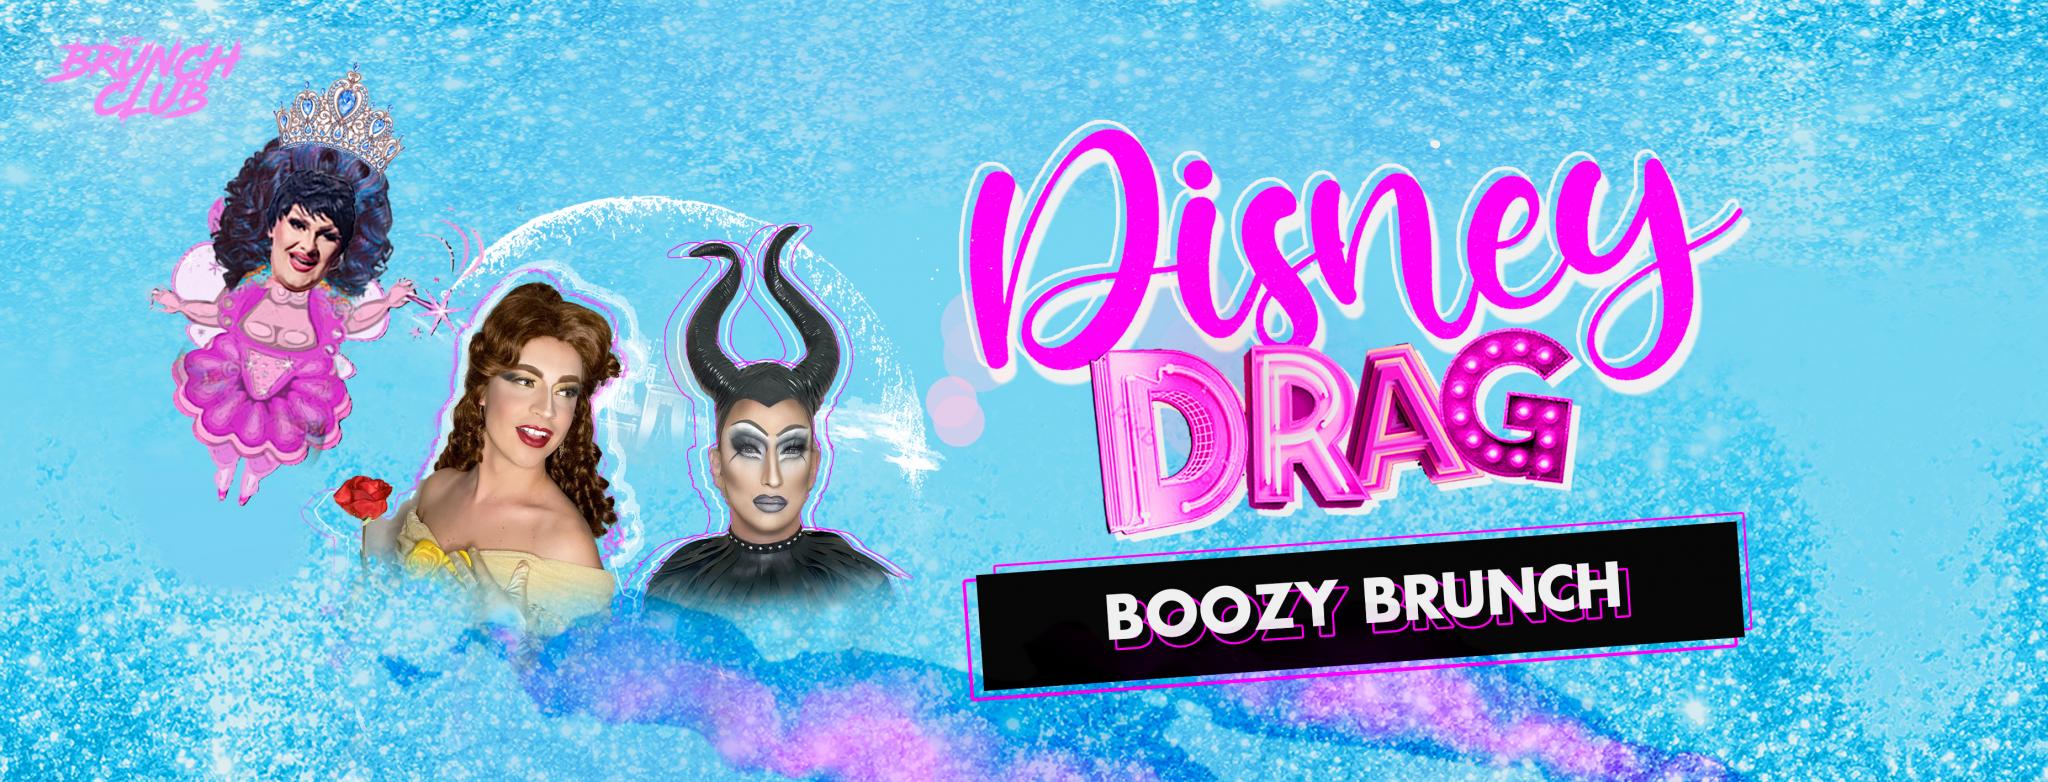 Disney Drag Boozy Brunch - Edinburgh